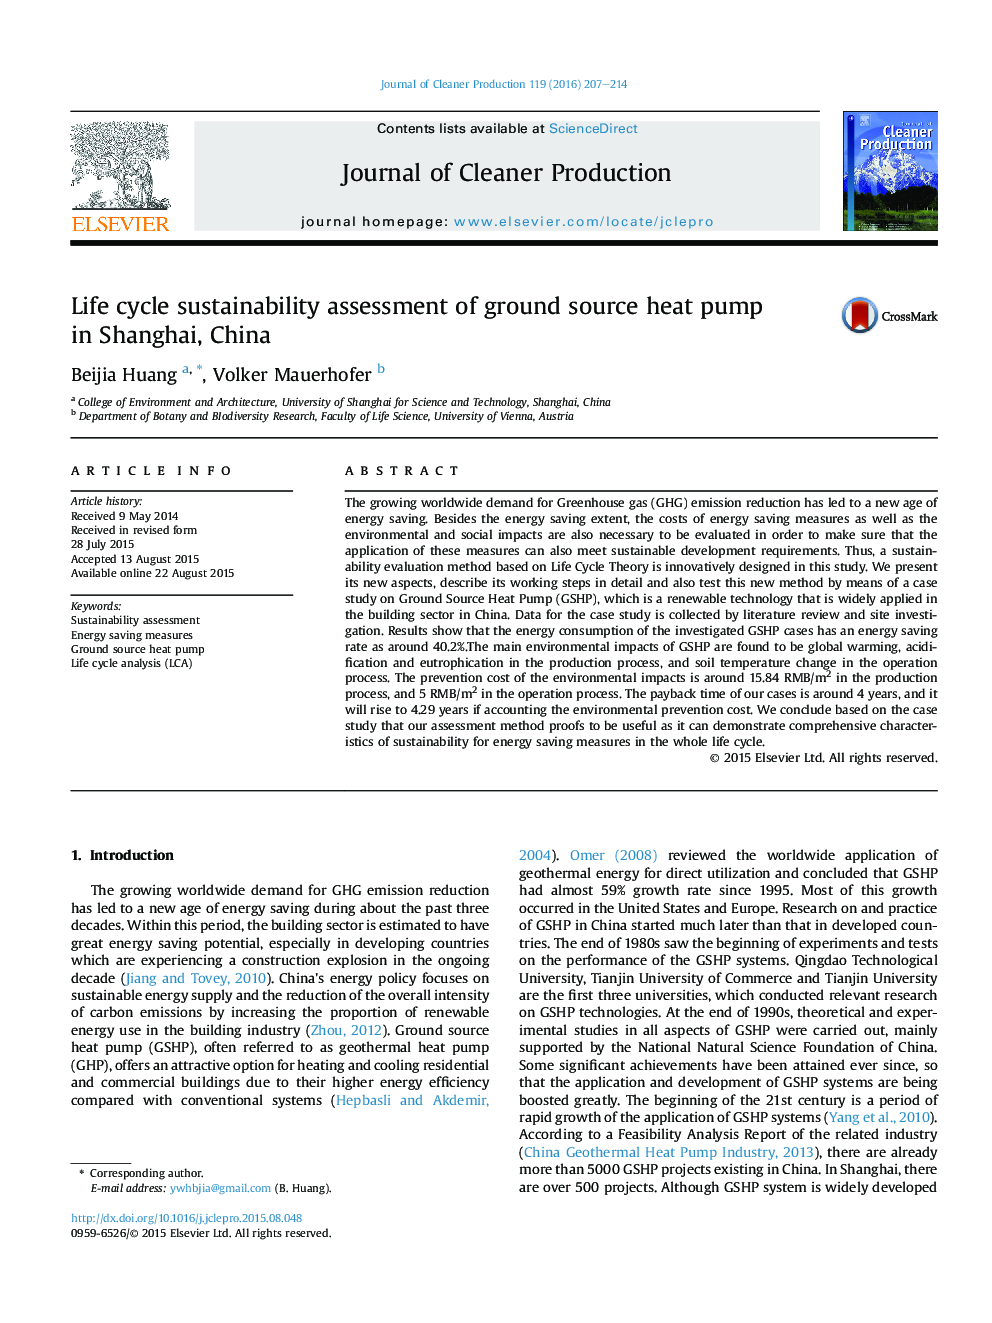 ارزیابی پایداری چرخه عمر پمپ حرارتی منبع زمین در شانگهای، چین